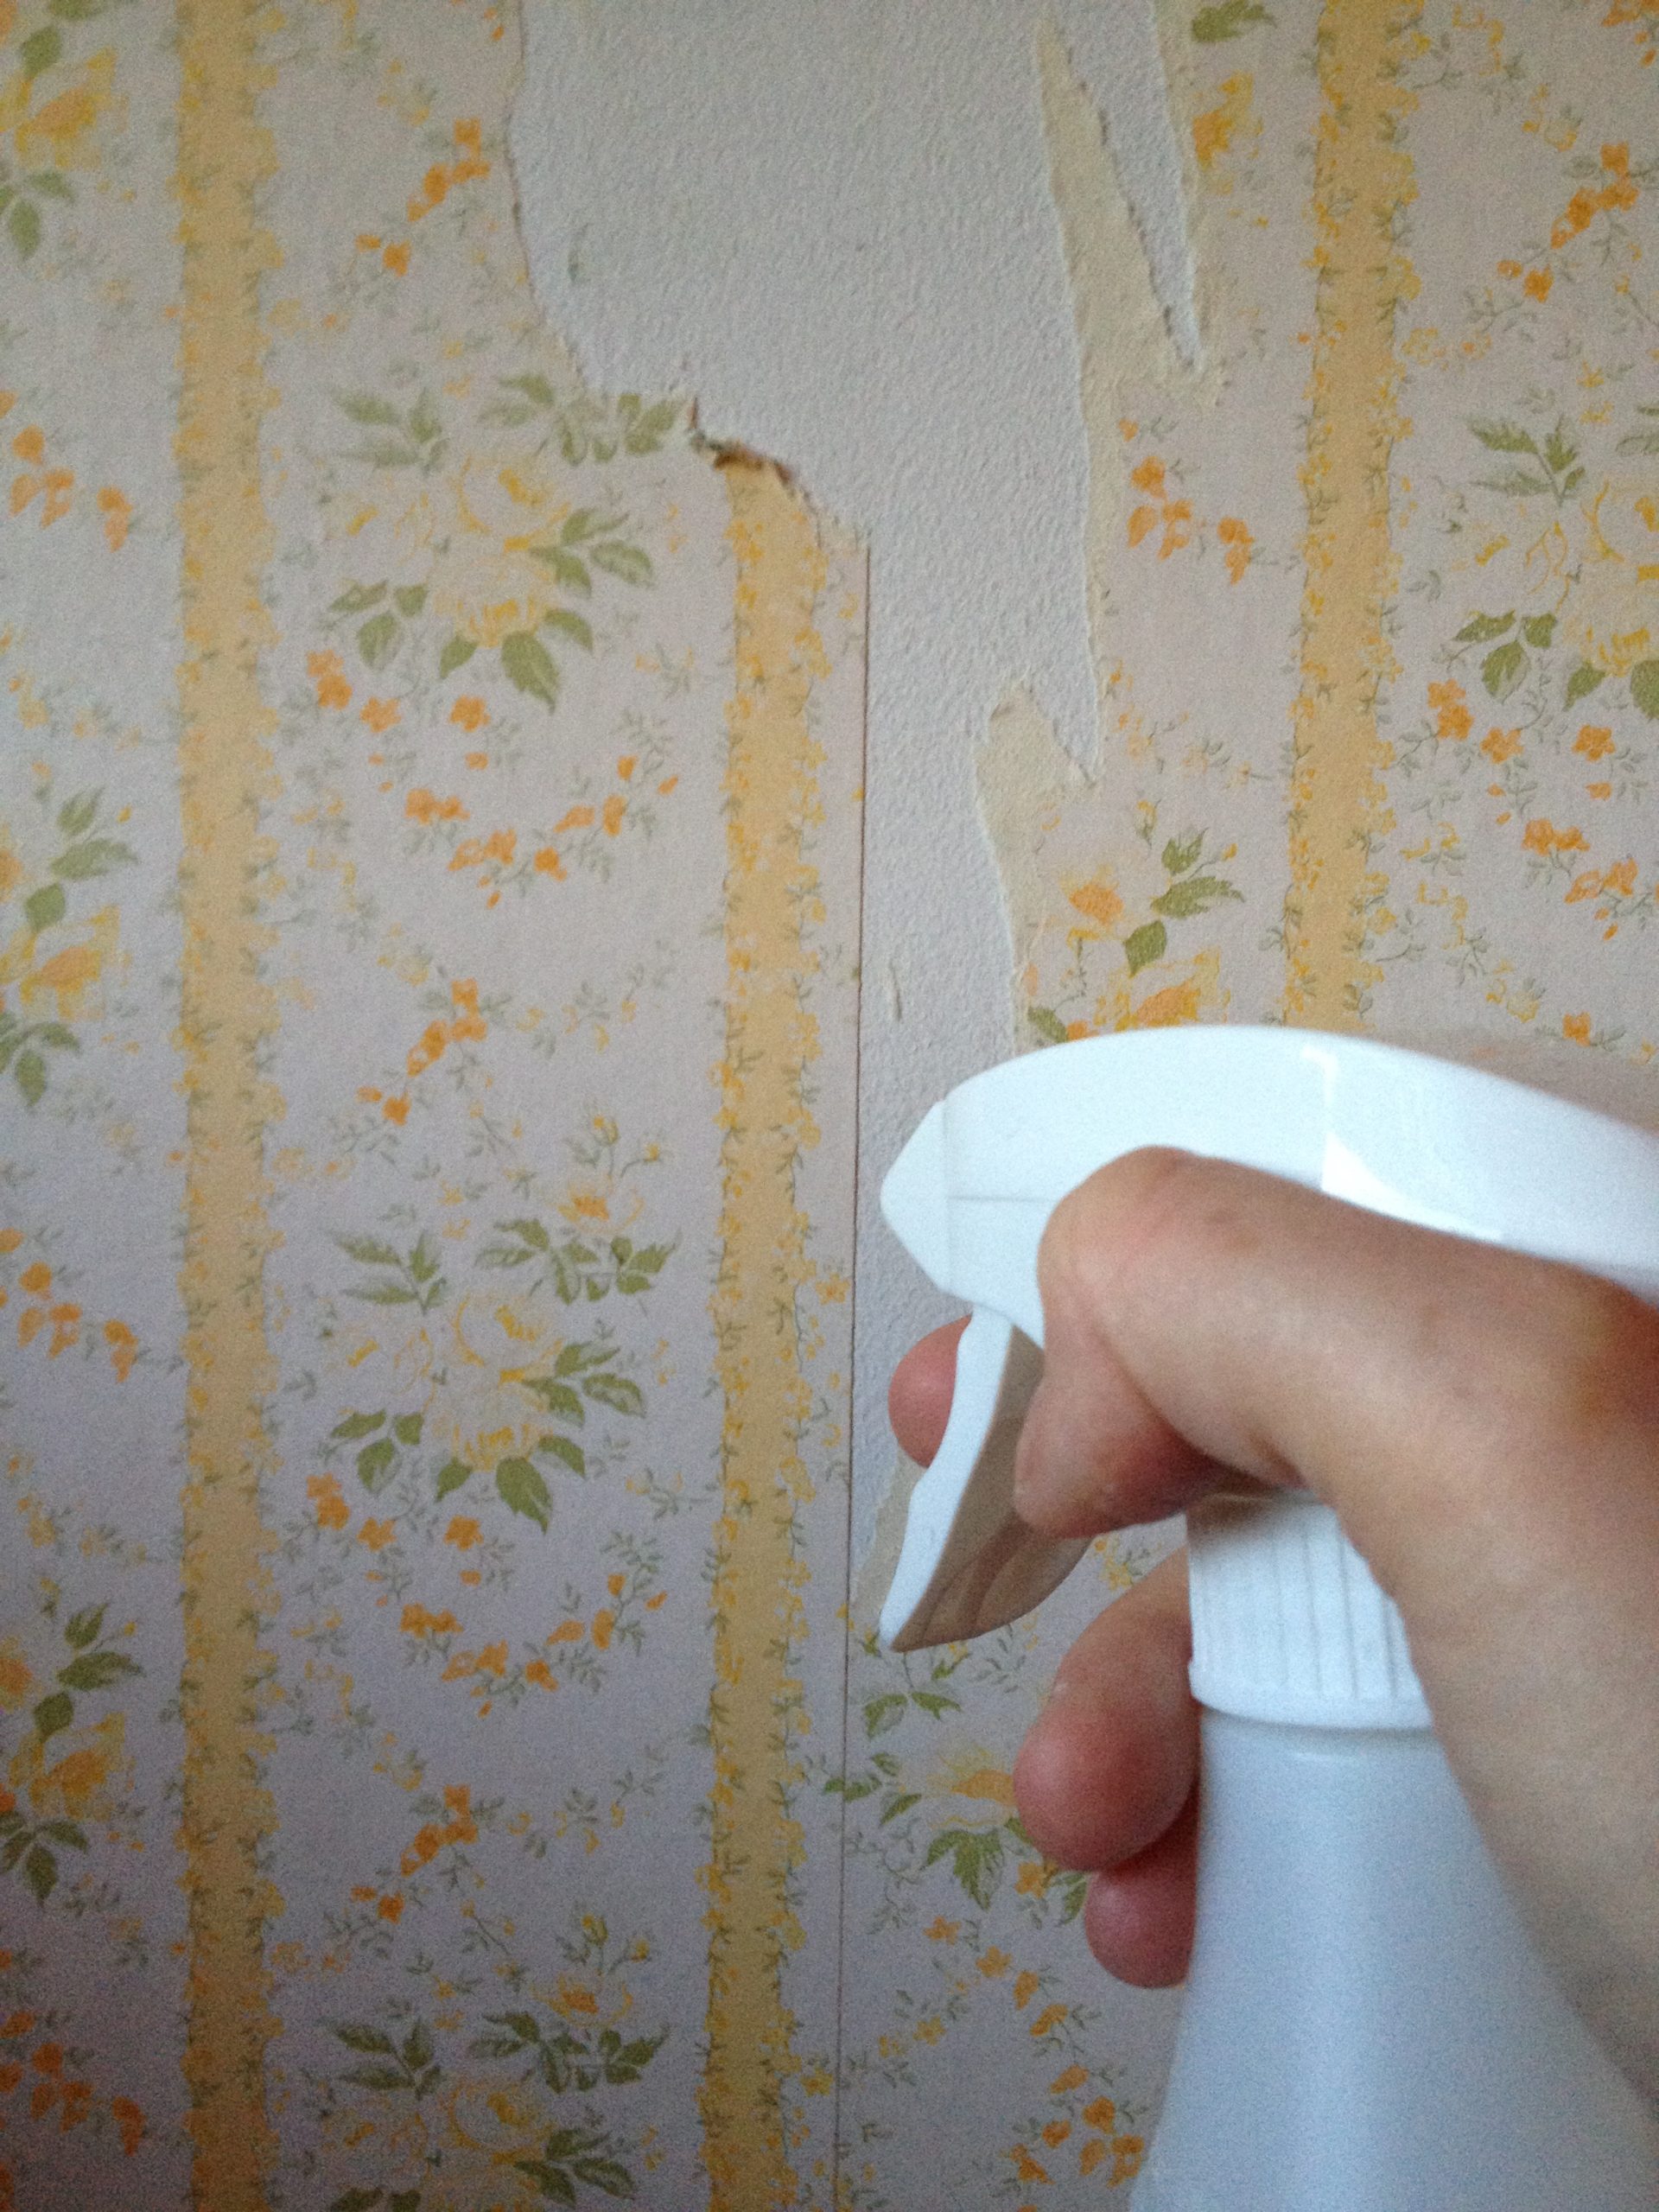 remover papel de parede com água e detergente